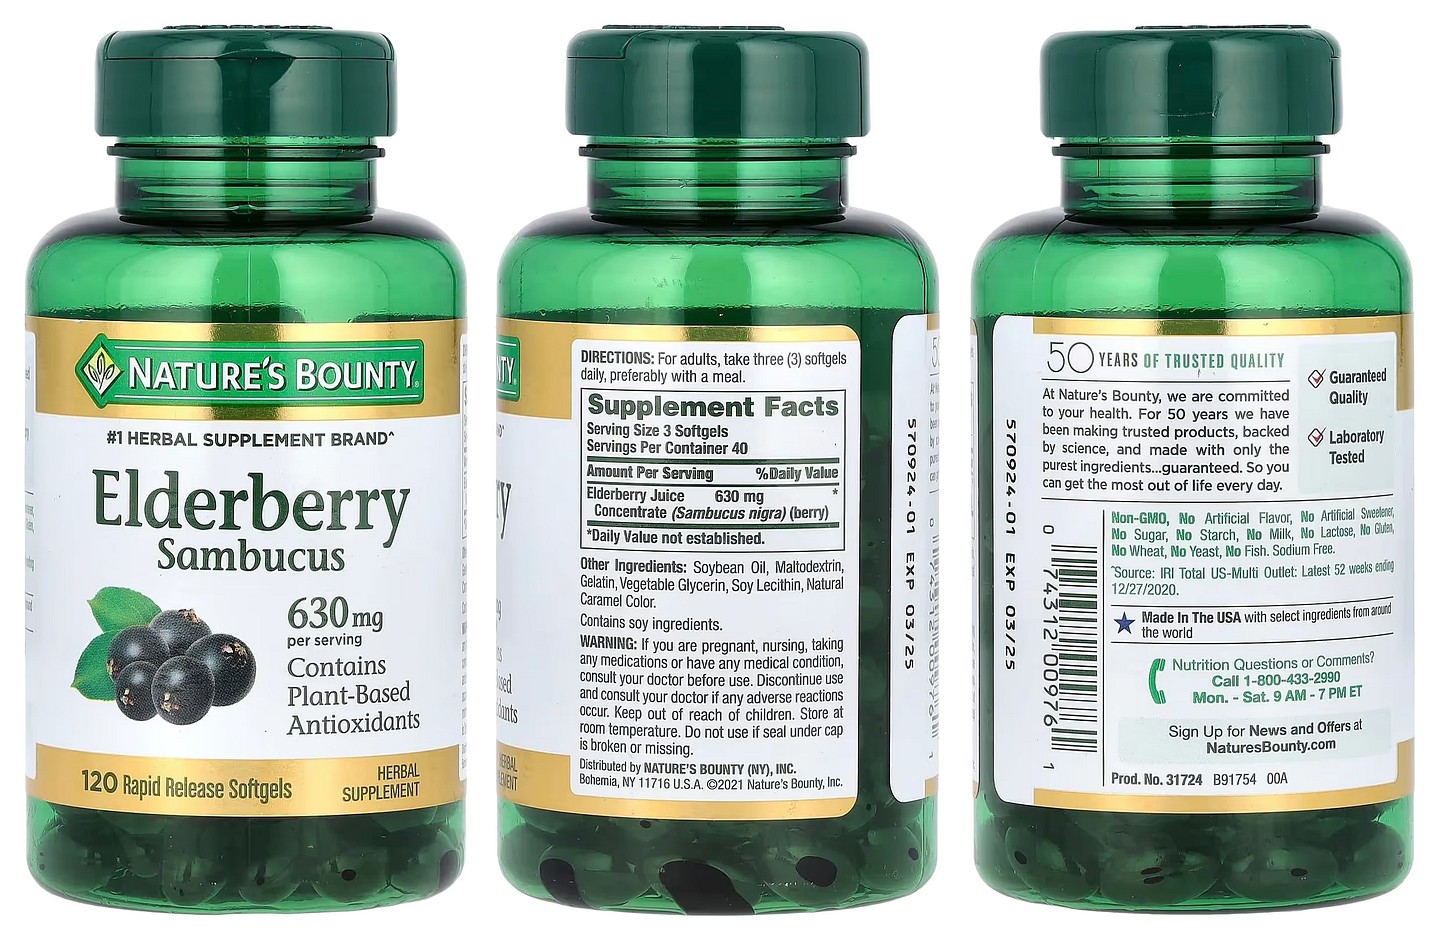 Nature's Bounty, Elderberry Sambucus packaging